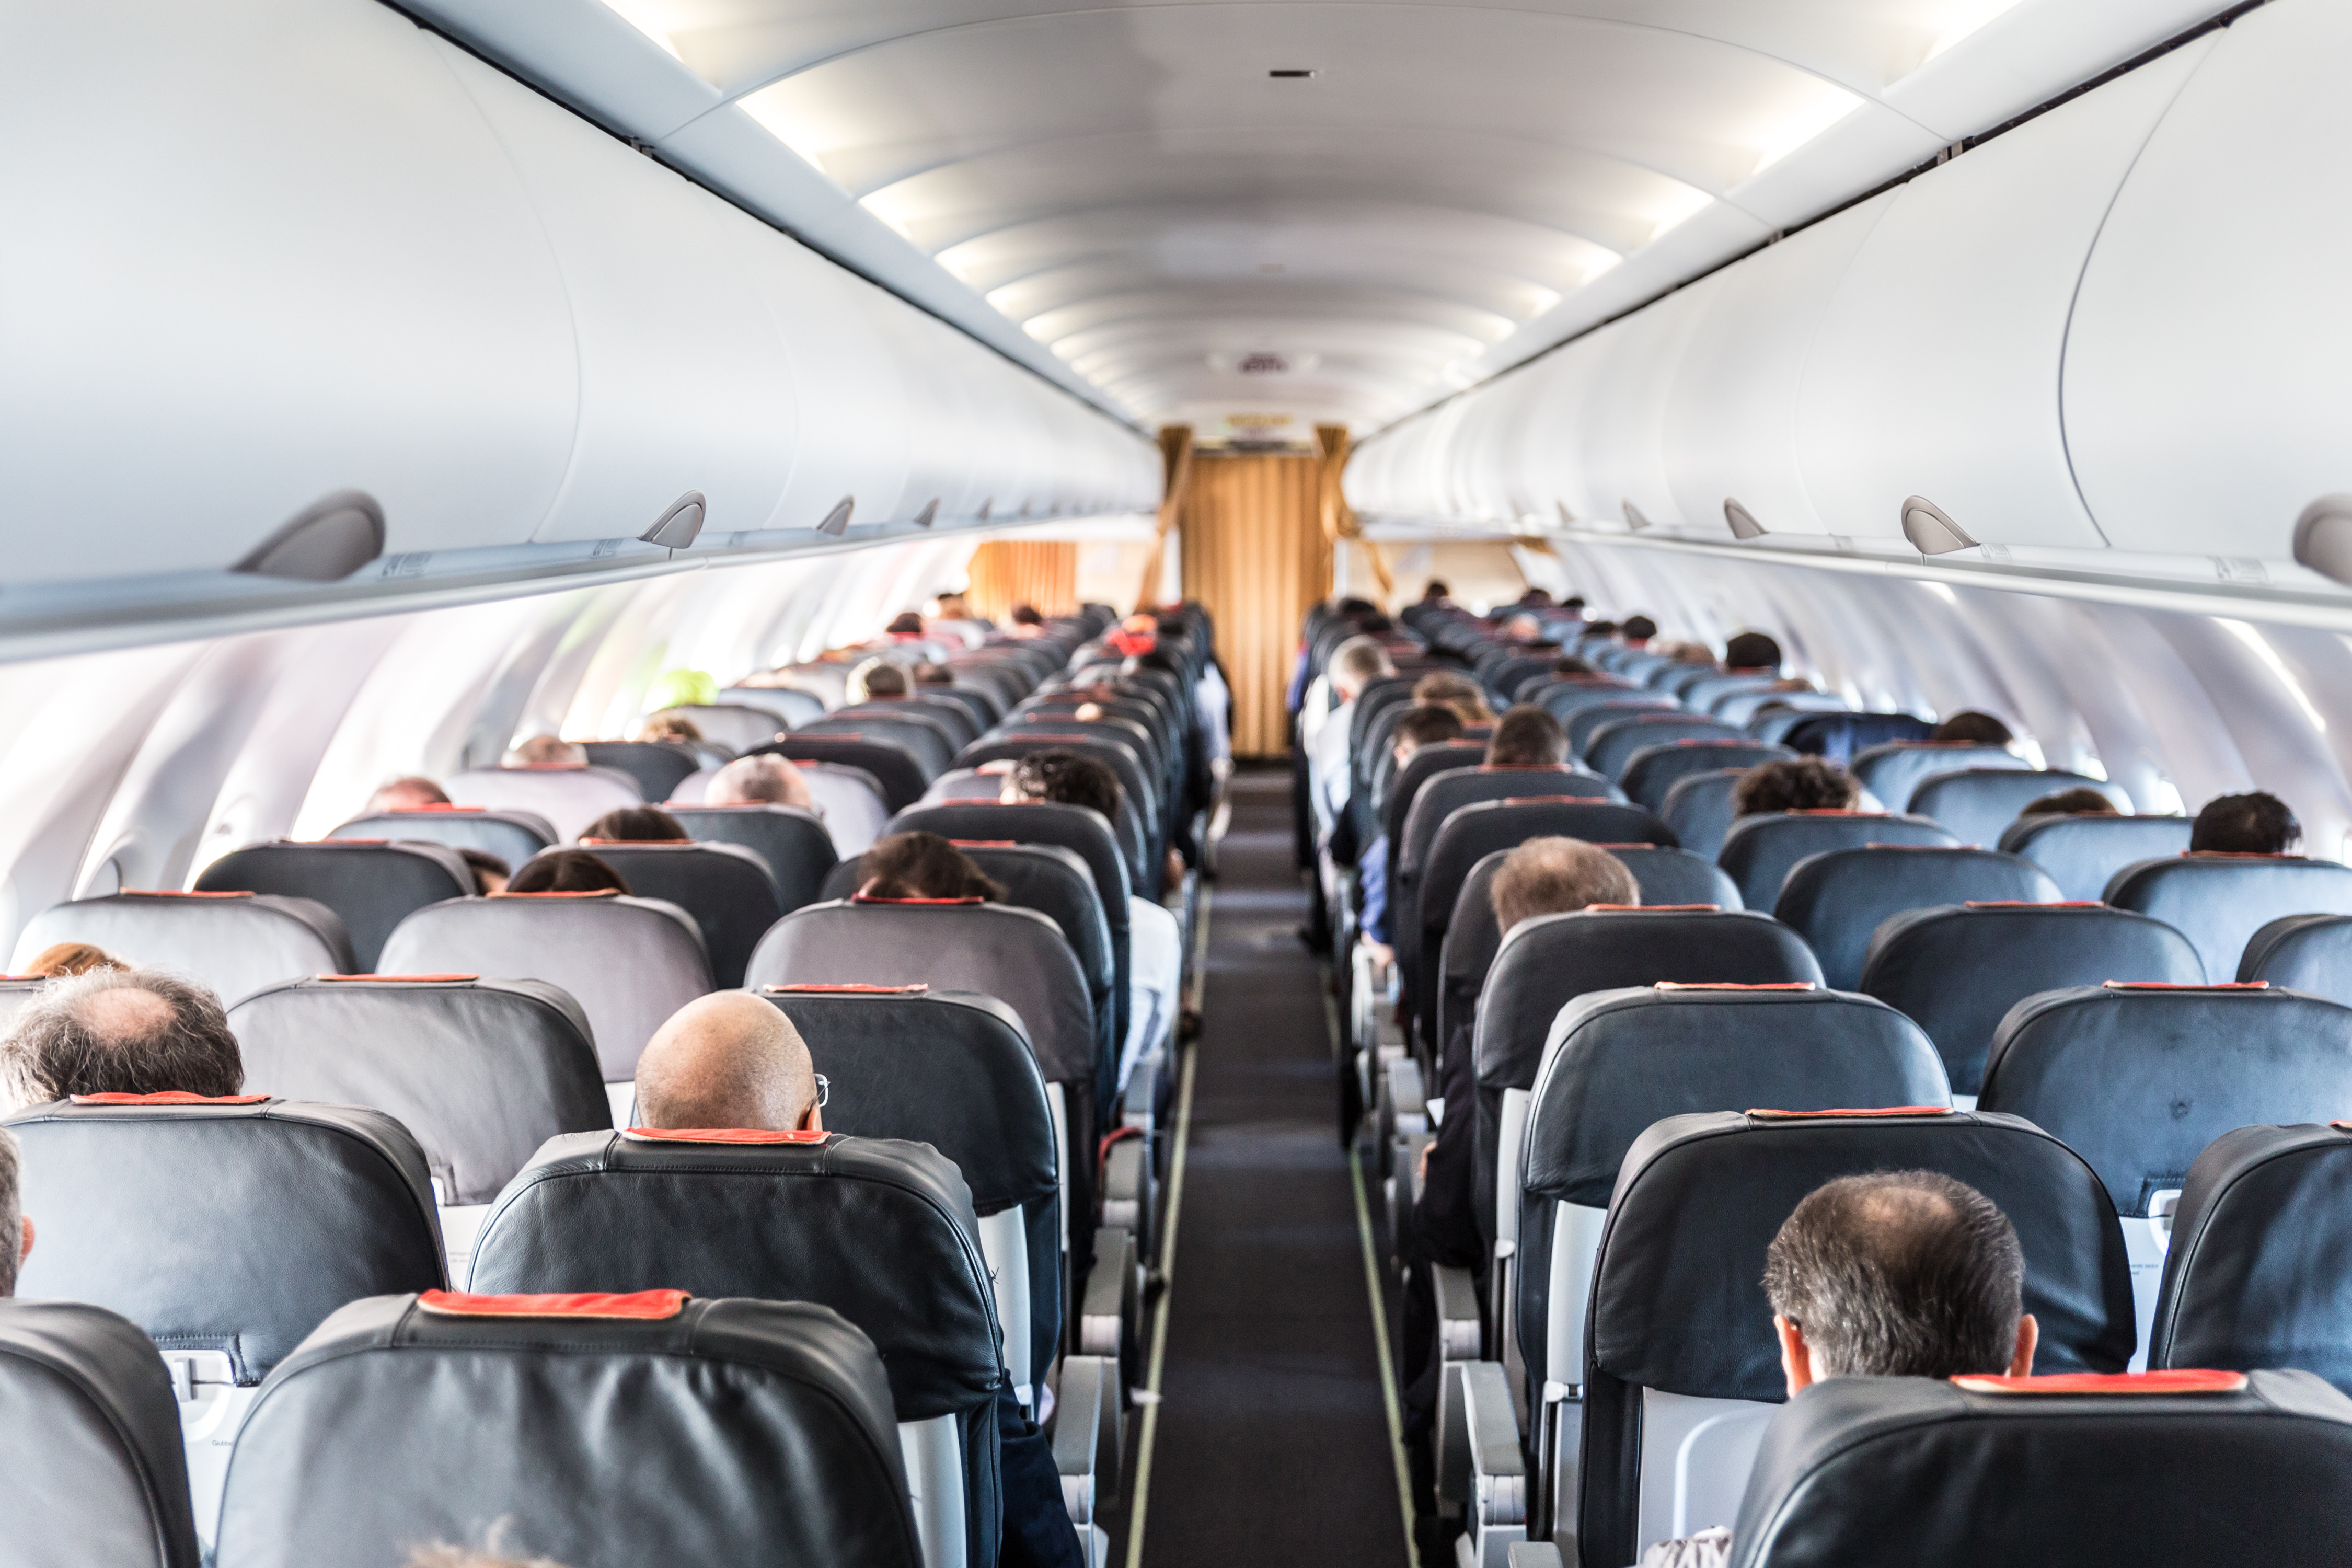 Passengers inside an airplane | Source: Shutterstock